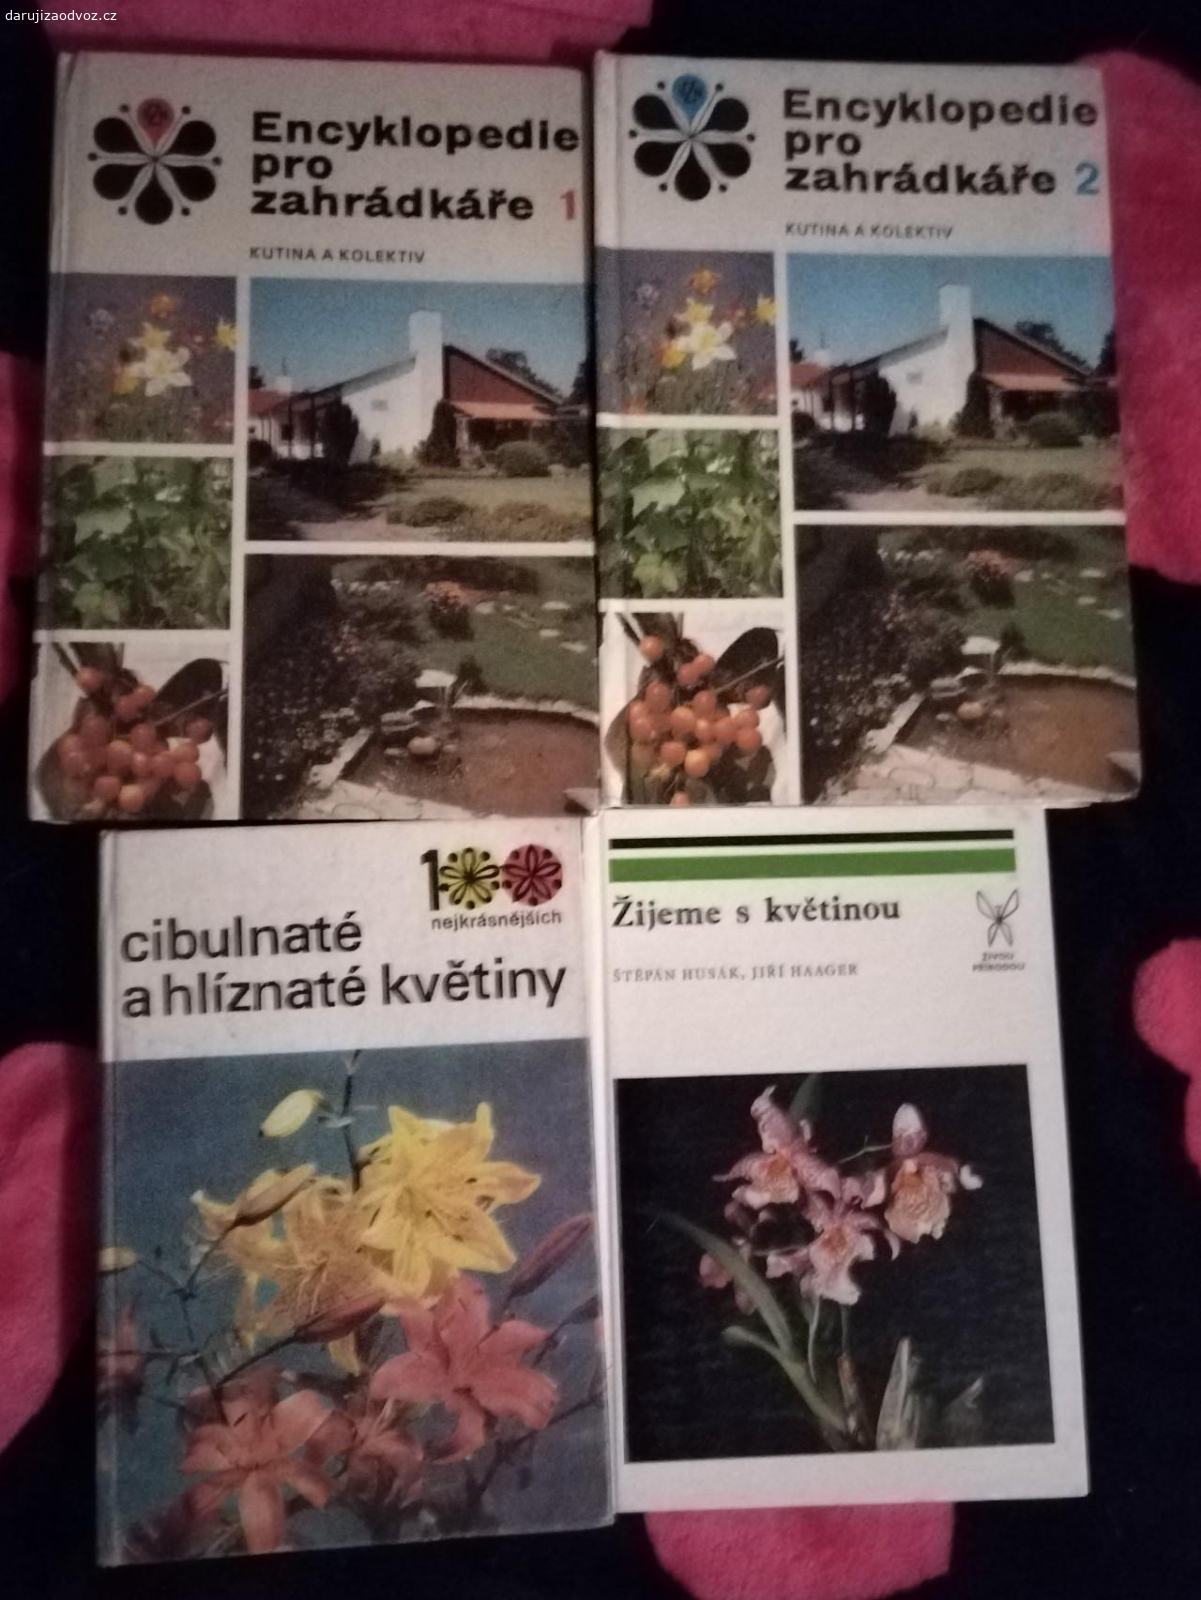 Knihy pro zahrádkáře. Nabízím knihy pro zahrádkáře, předám v Praze 10 Strašnice, jestli mi chcete něco přinést, uvítám nějaké rostliny k zasazení na zahrádku,není podmínkou.